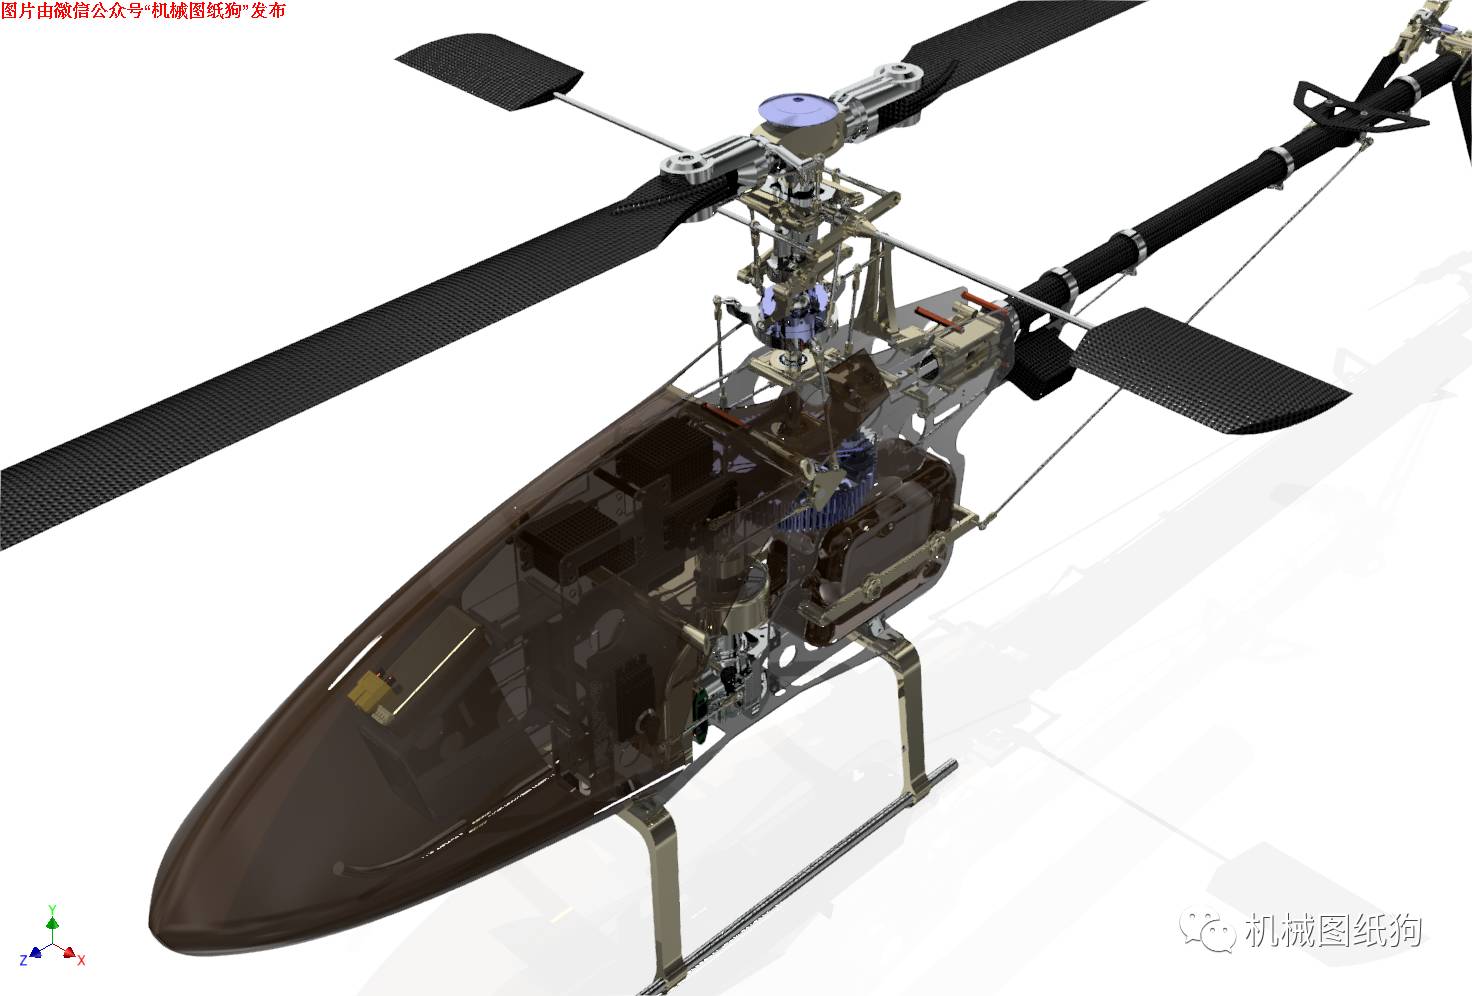 【飞行模型】Konstantin设计的RC遥控直升机模型3D图纸 Inventor设计 附igs